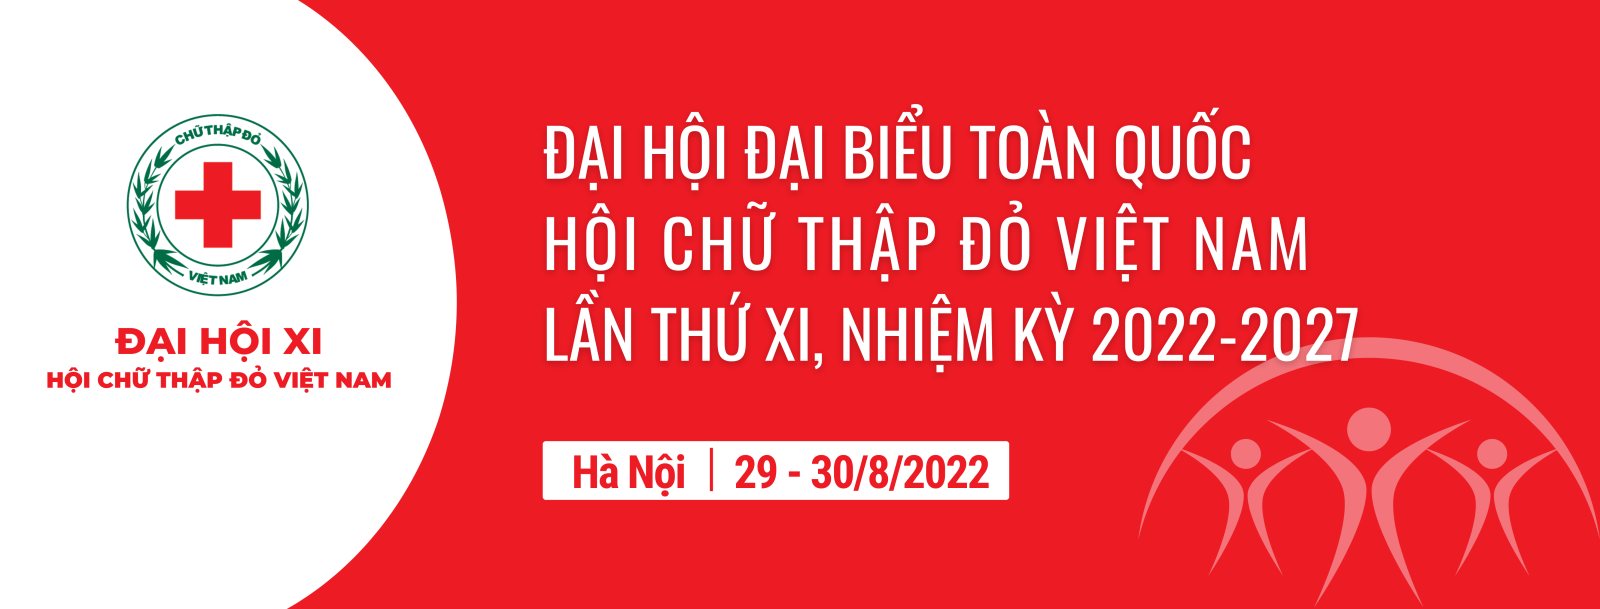 Banner chào mừng Đại hội đại biểu Hội Chữ thập đỏ Việt Nam nhiệm kỳ 2022-2027